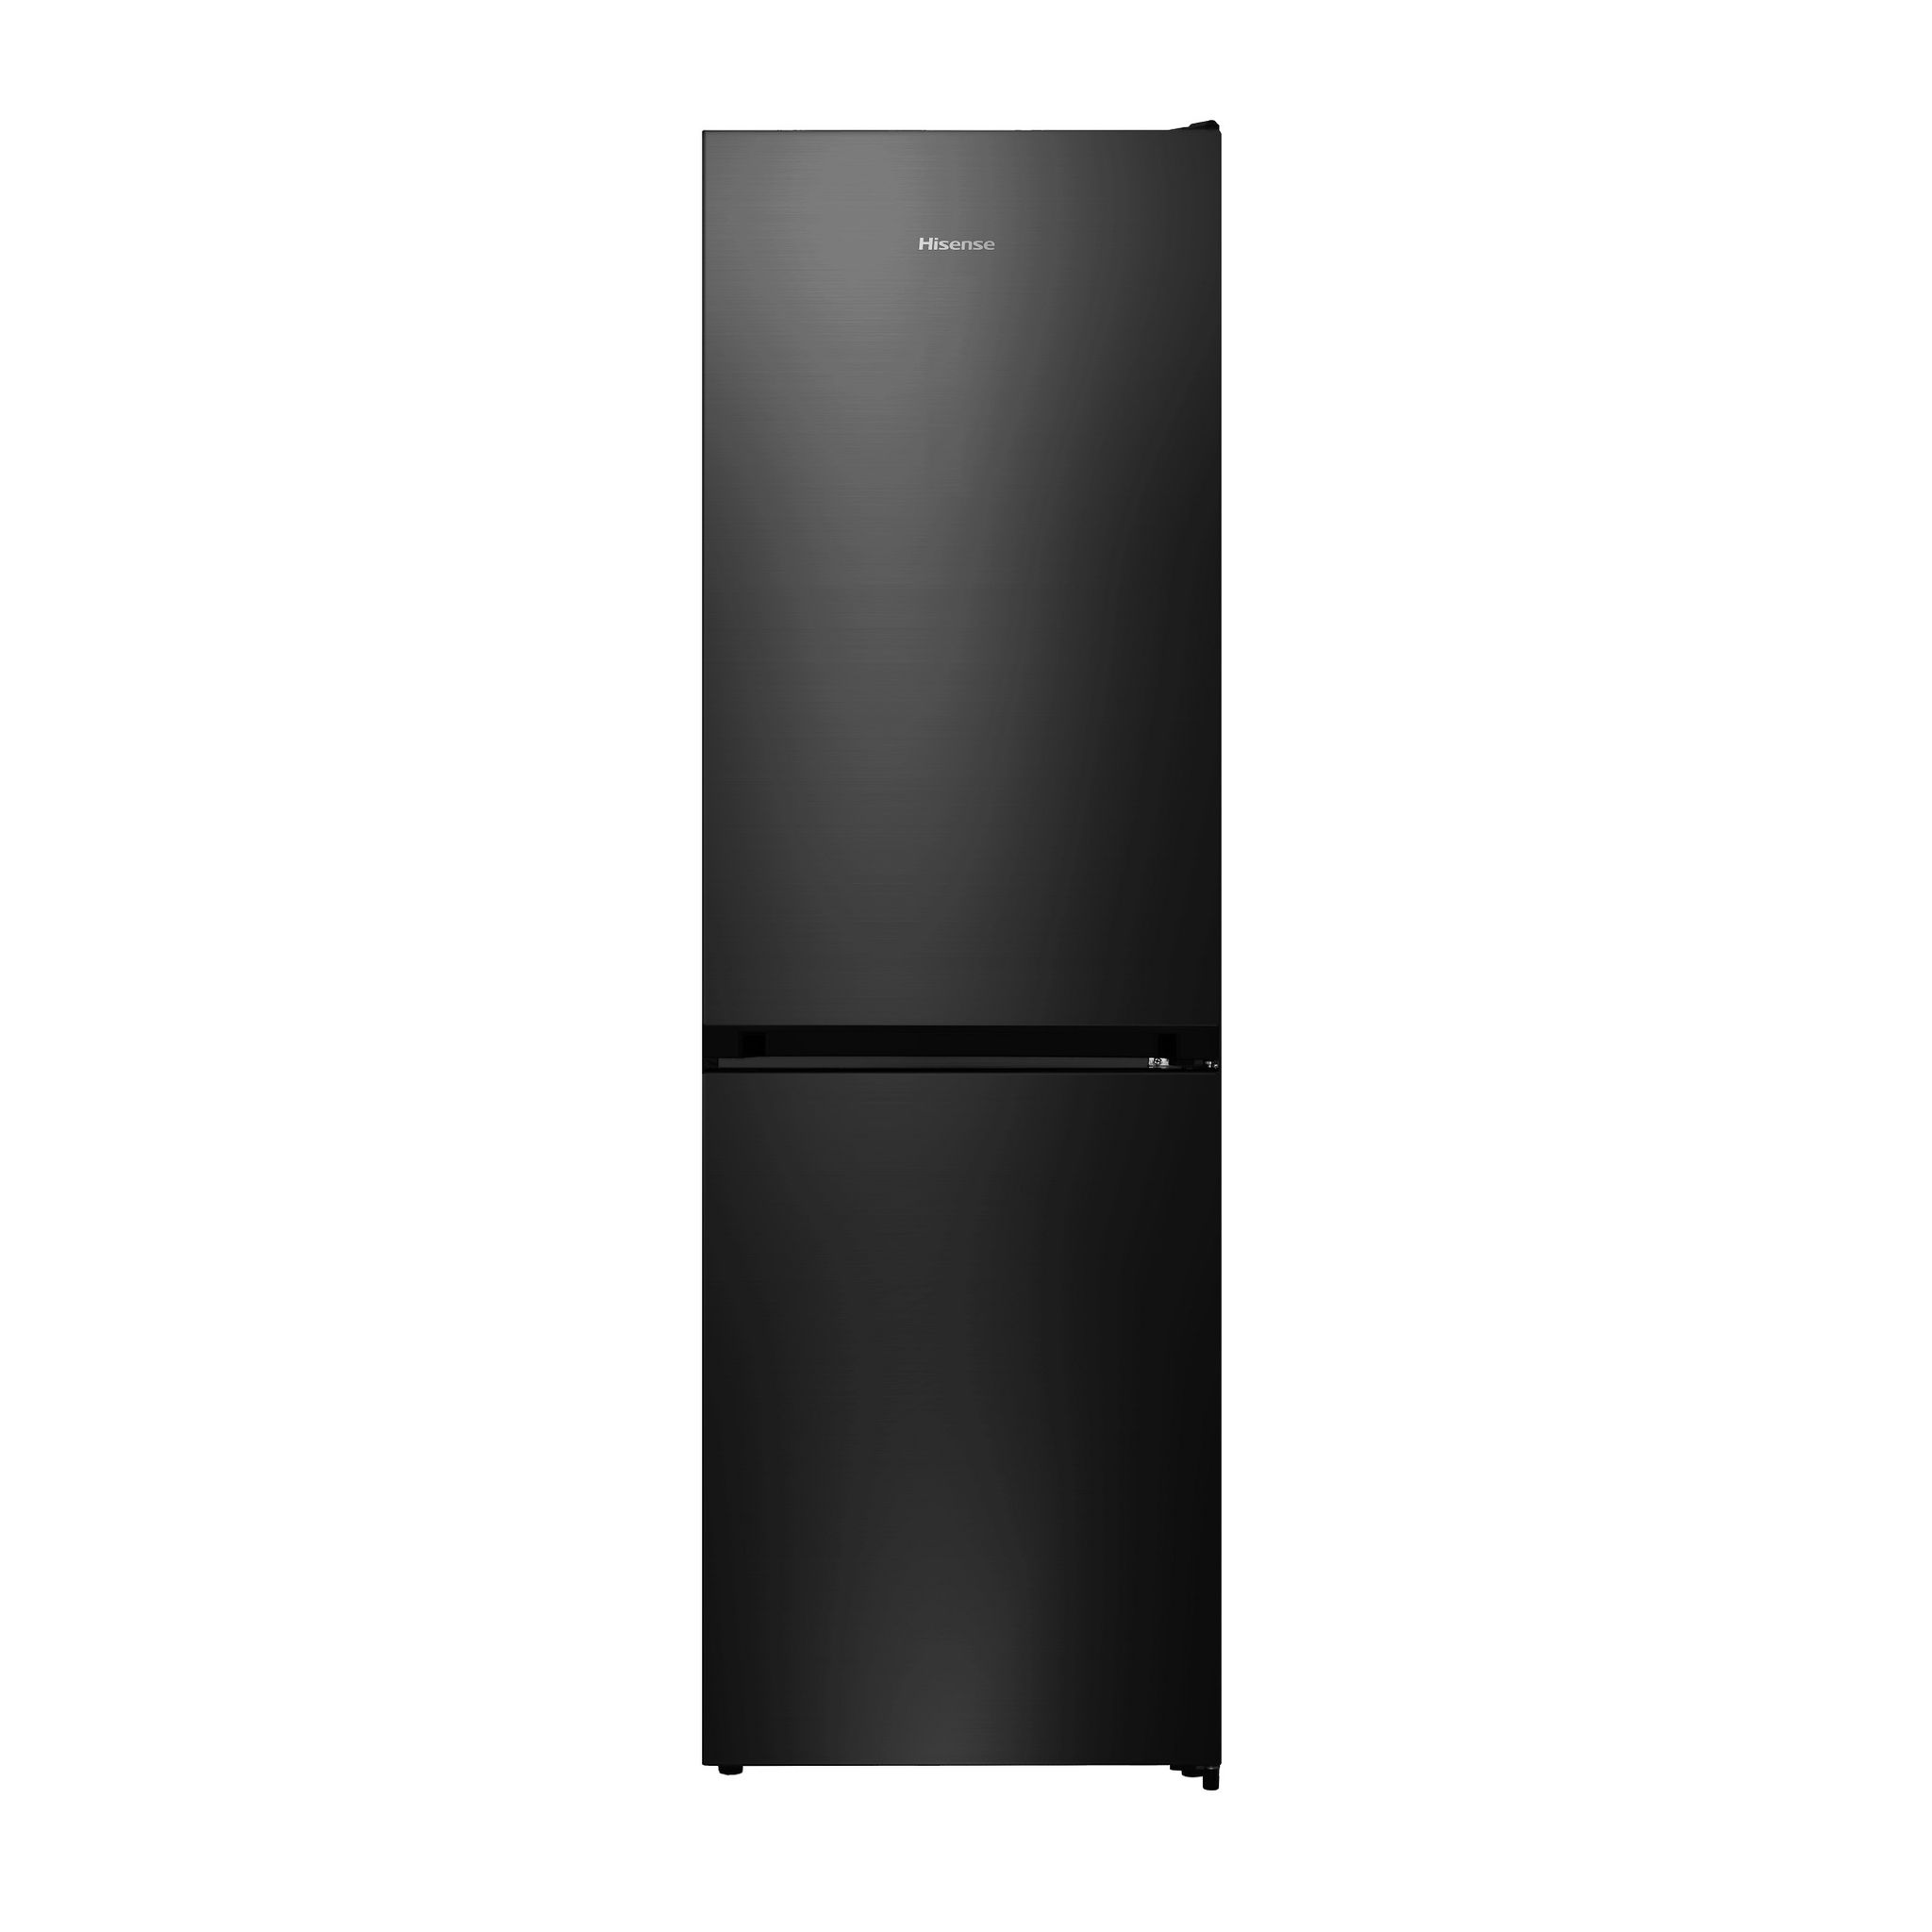 SELECLINE Réfrigérateur combiné 600081547, 170 L, Froid statique